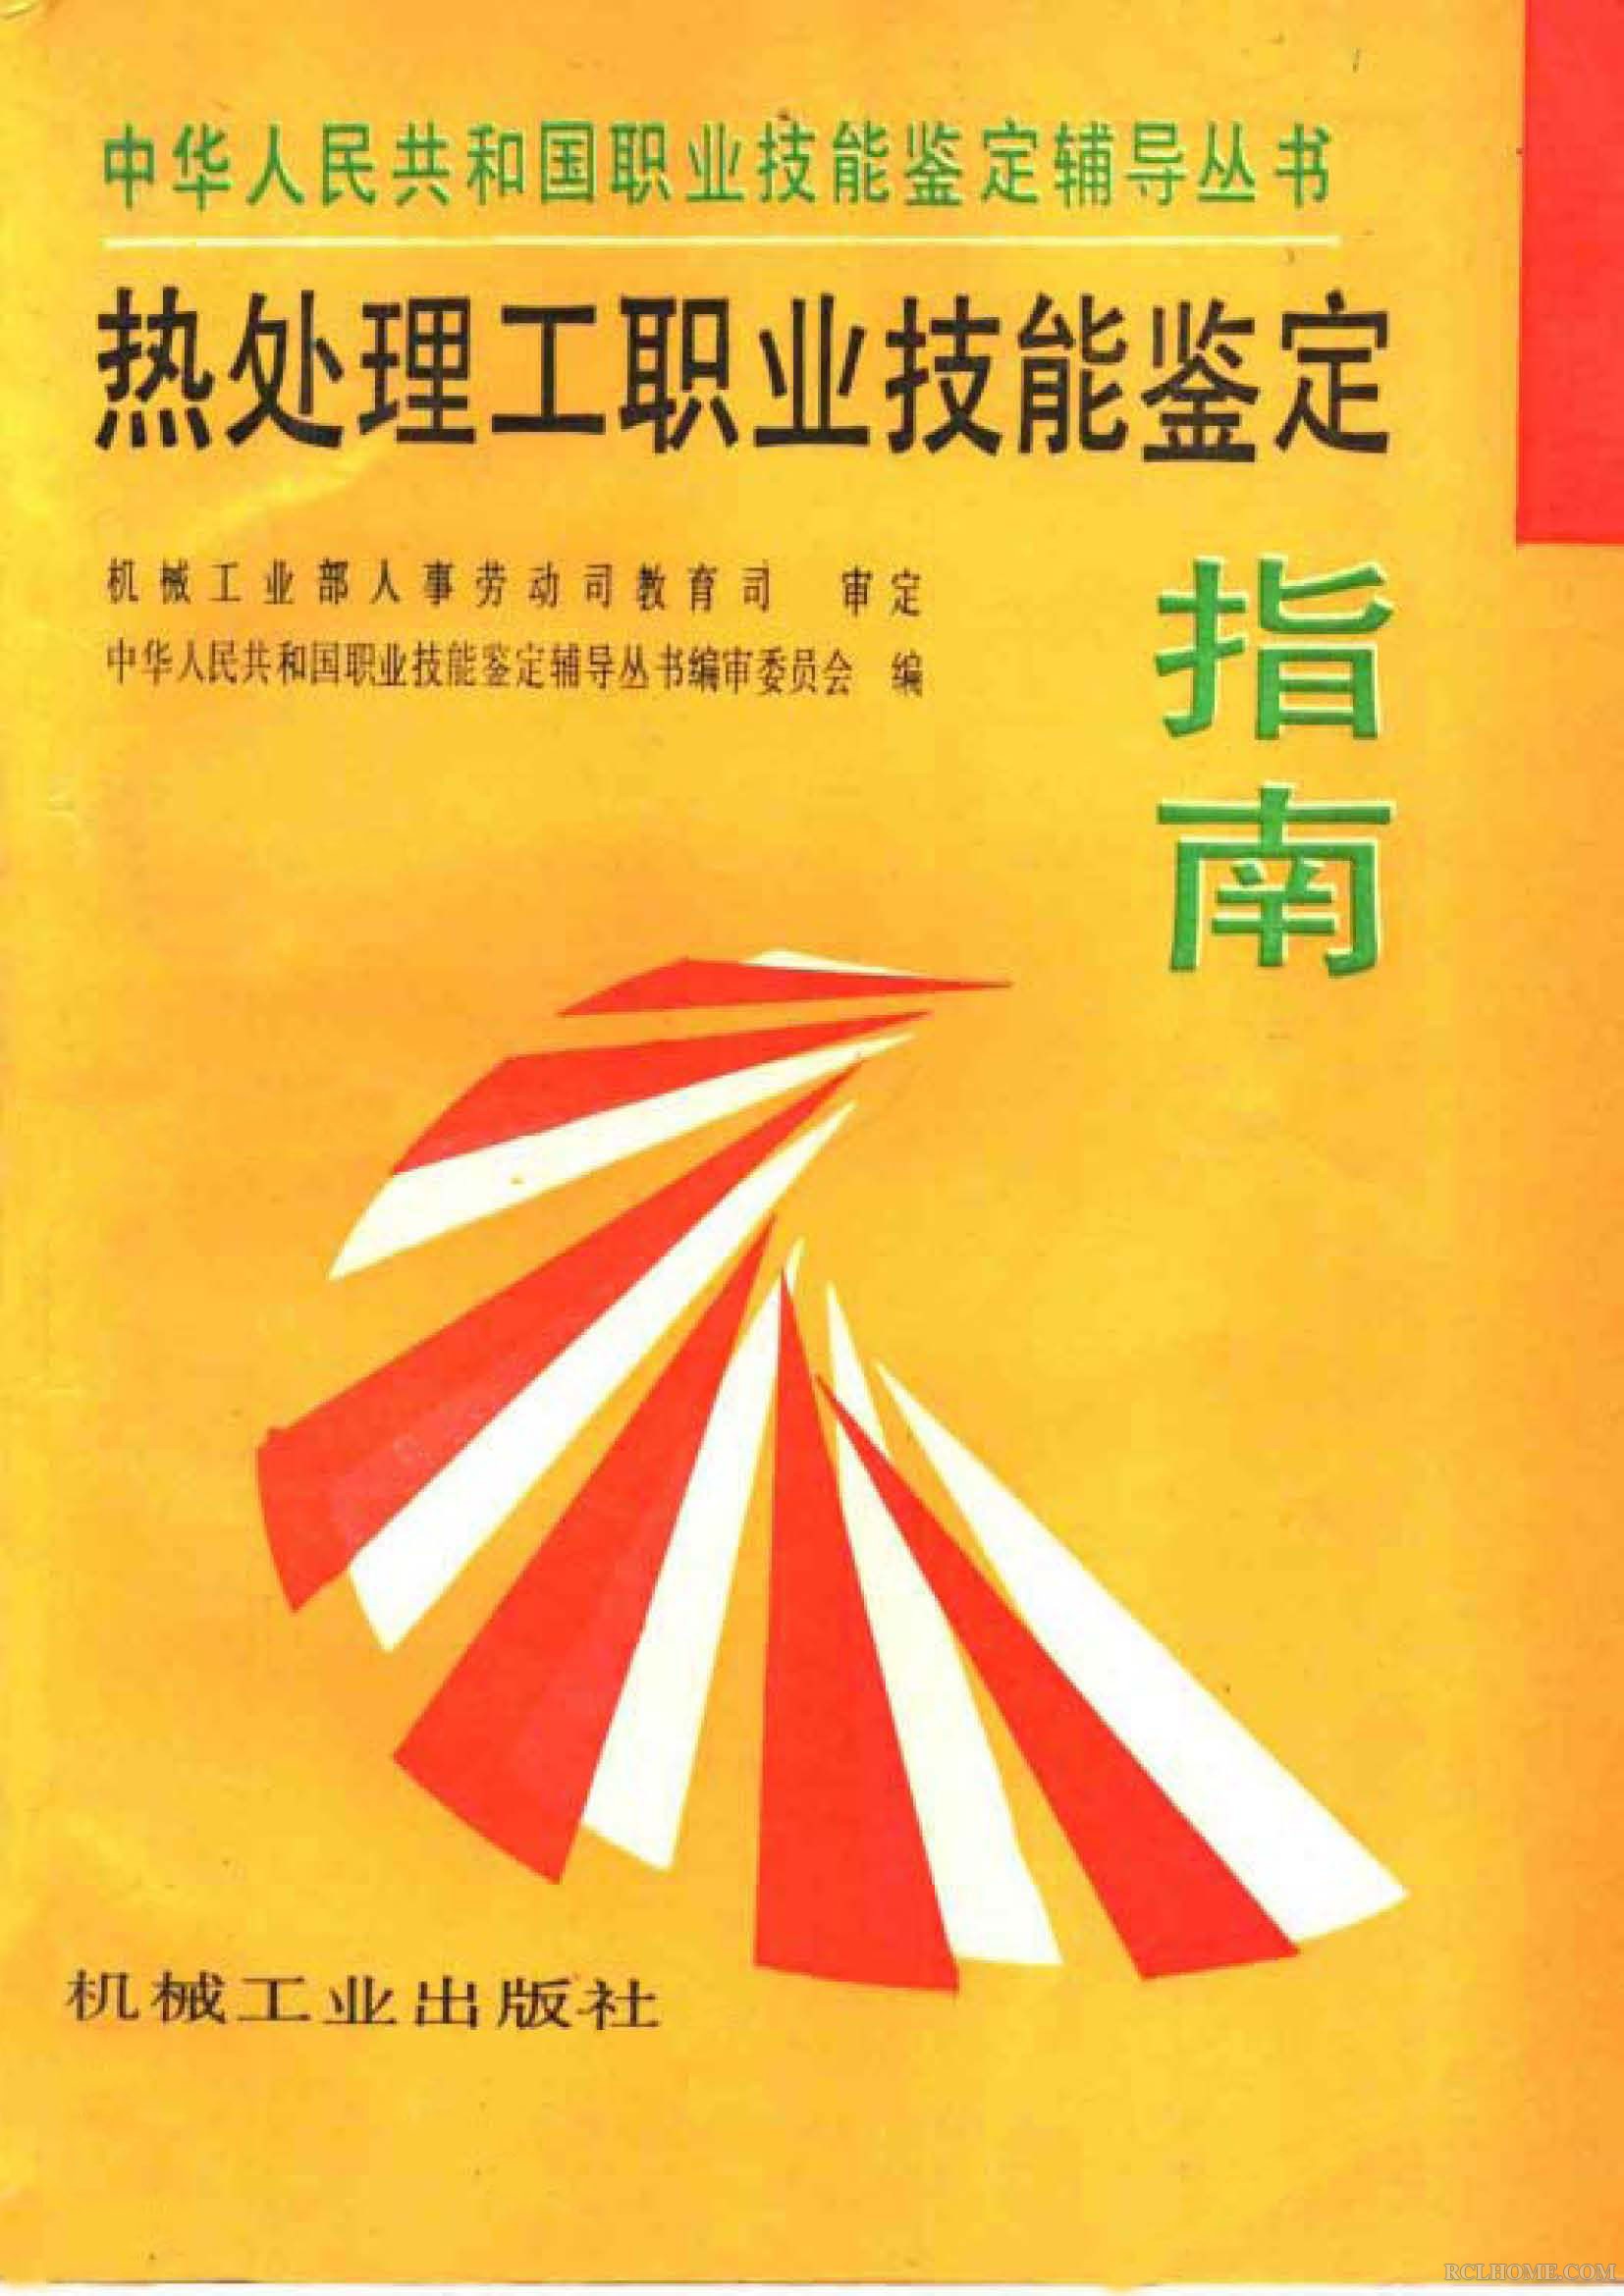 热处理工职业技能鉴定指南(1996).jpg